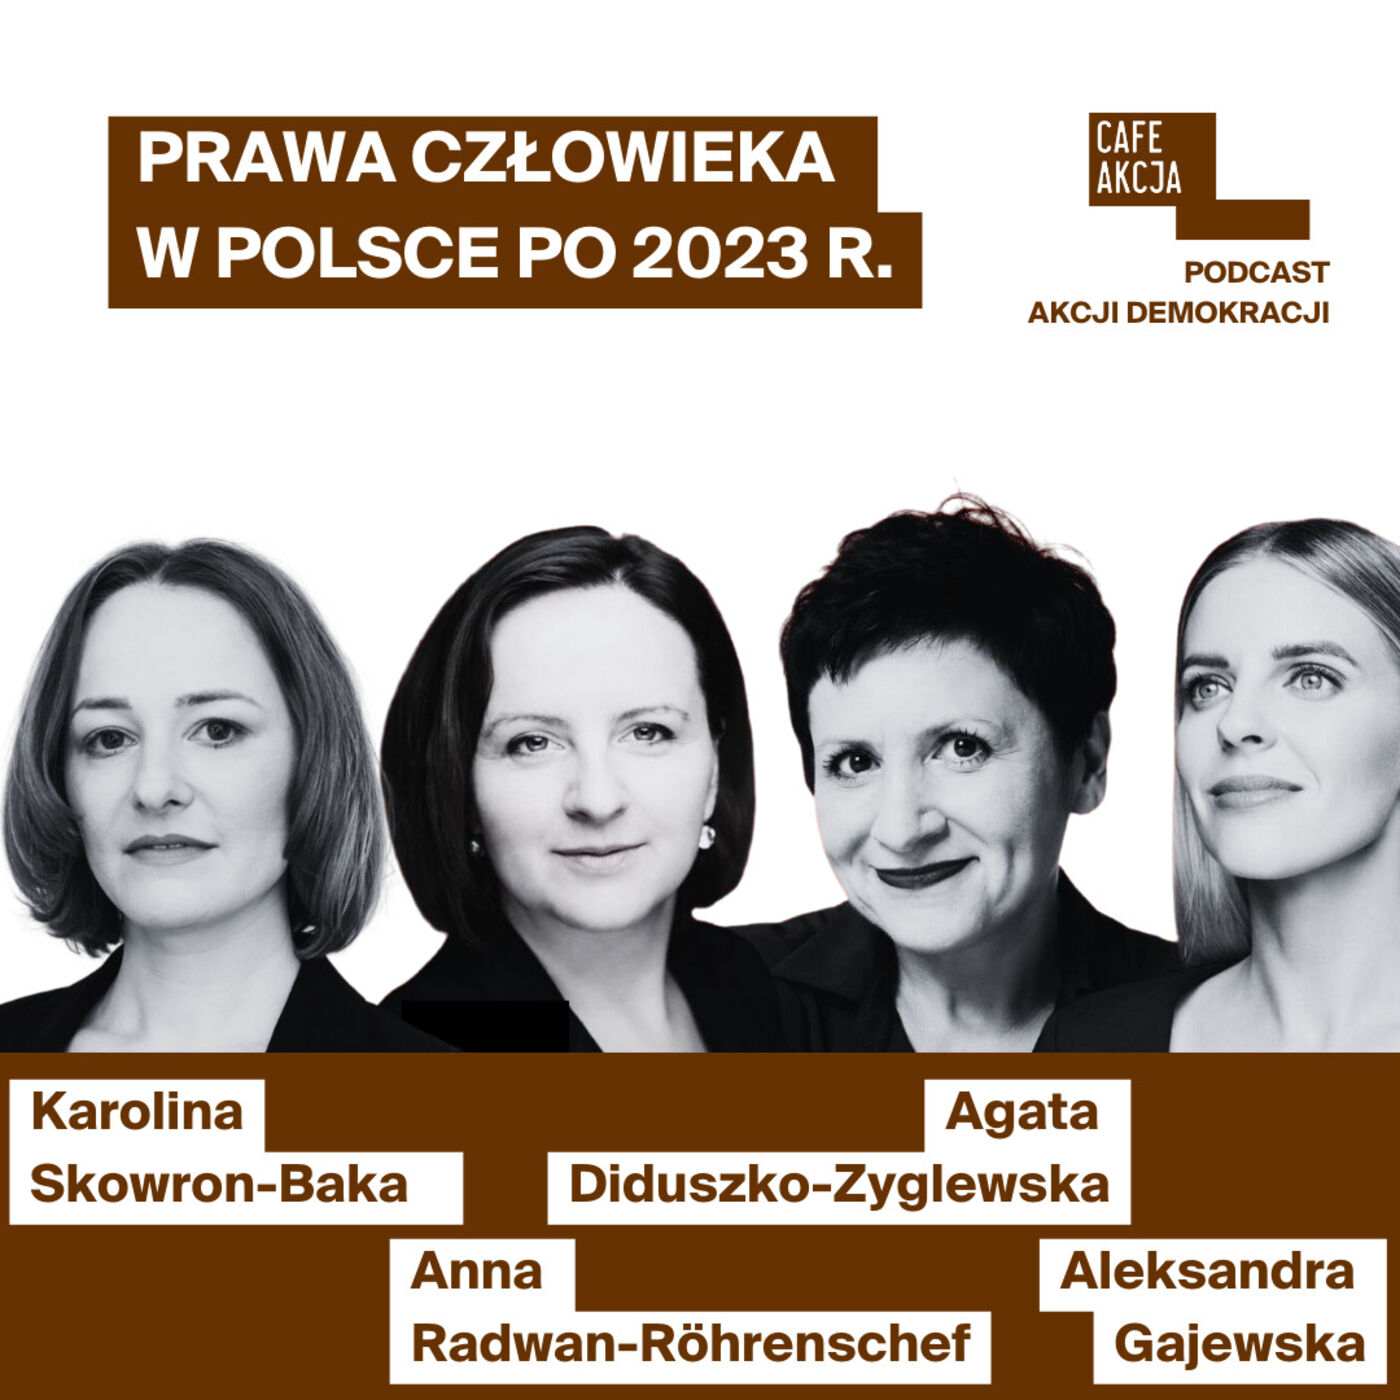 Wybo23: Aleksandra Gajewska (KO), Agata Diduszko-Zyglewska (Lewica) oraz Anna Radwan-Röhrenschef (Trzecia Droga) debata o prawach człowieka